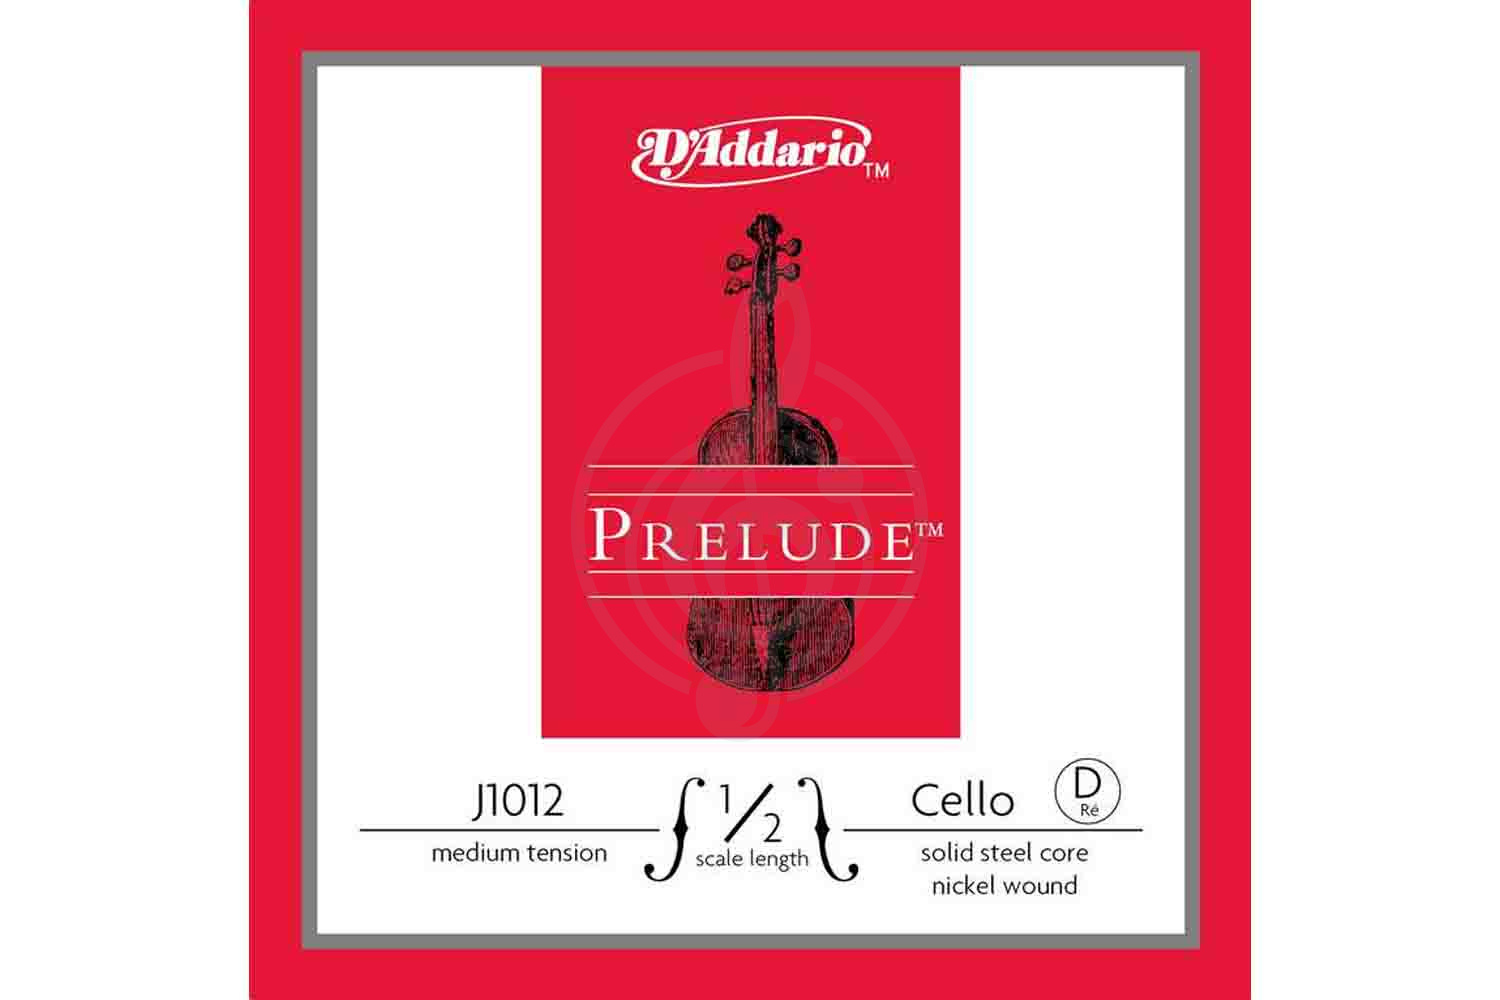 Струны для виолончели D'Addario J1012-1/2M-B10 Prelude - Отдельная струна D/Ре для виолончели 1/2, среднее натяжение, D'Addario J1012-1/2M-B10 Prelude в магазине DominantaMusic - фото 1